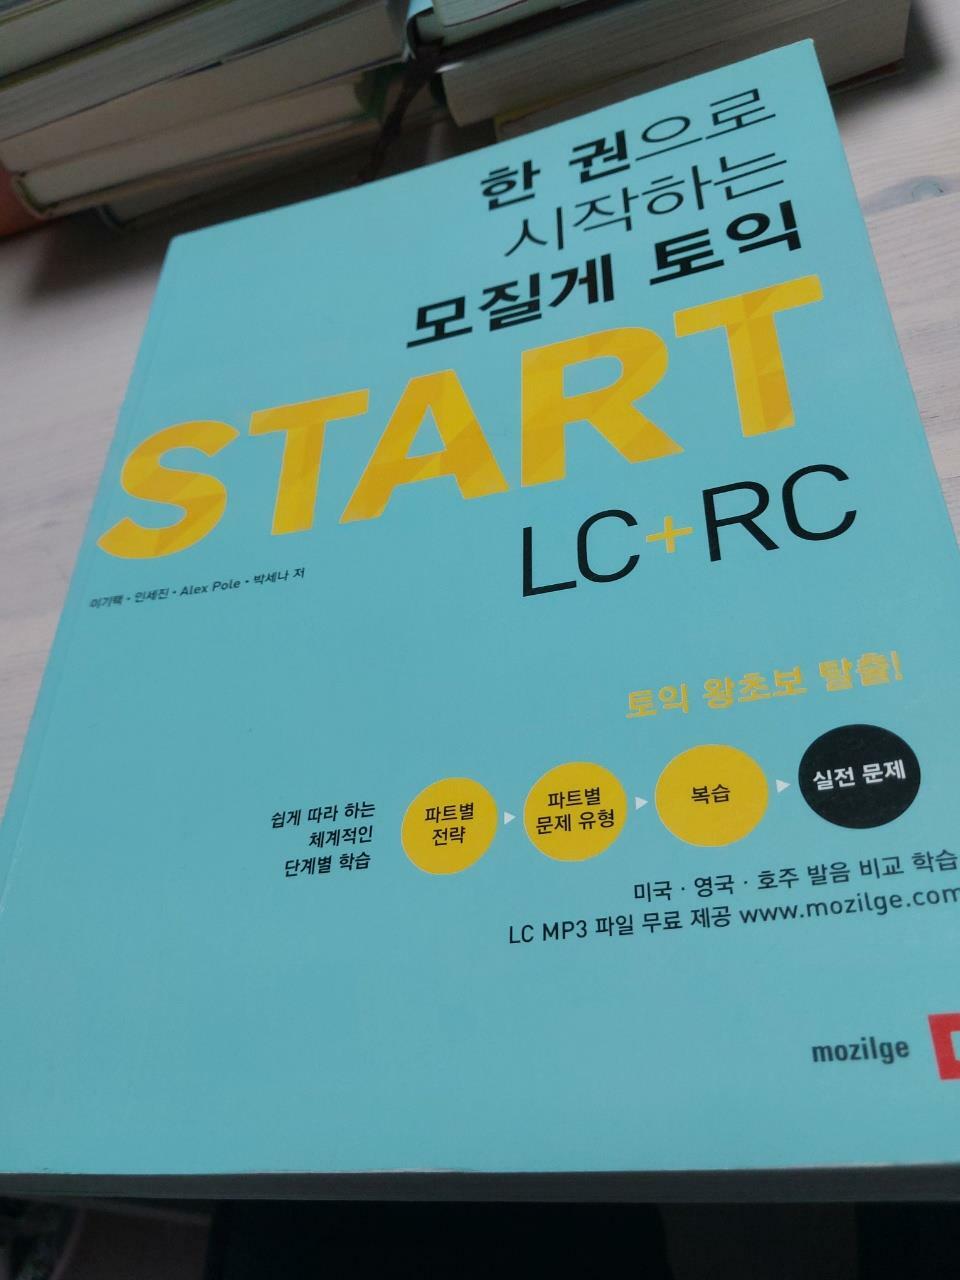 [중고] 한 권으로 시작하는 모질게 토익 Start LC + RC